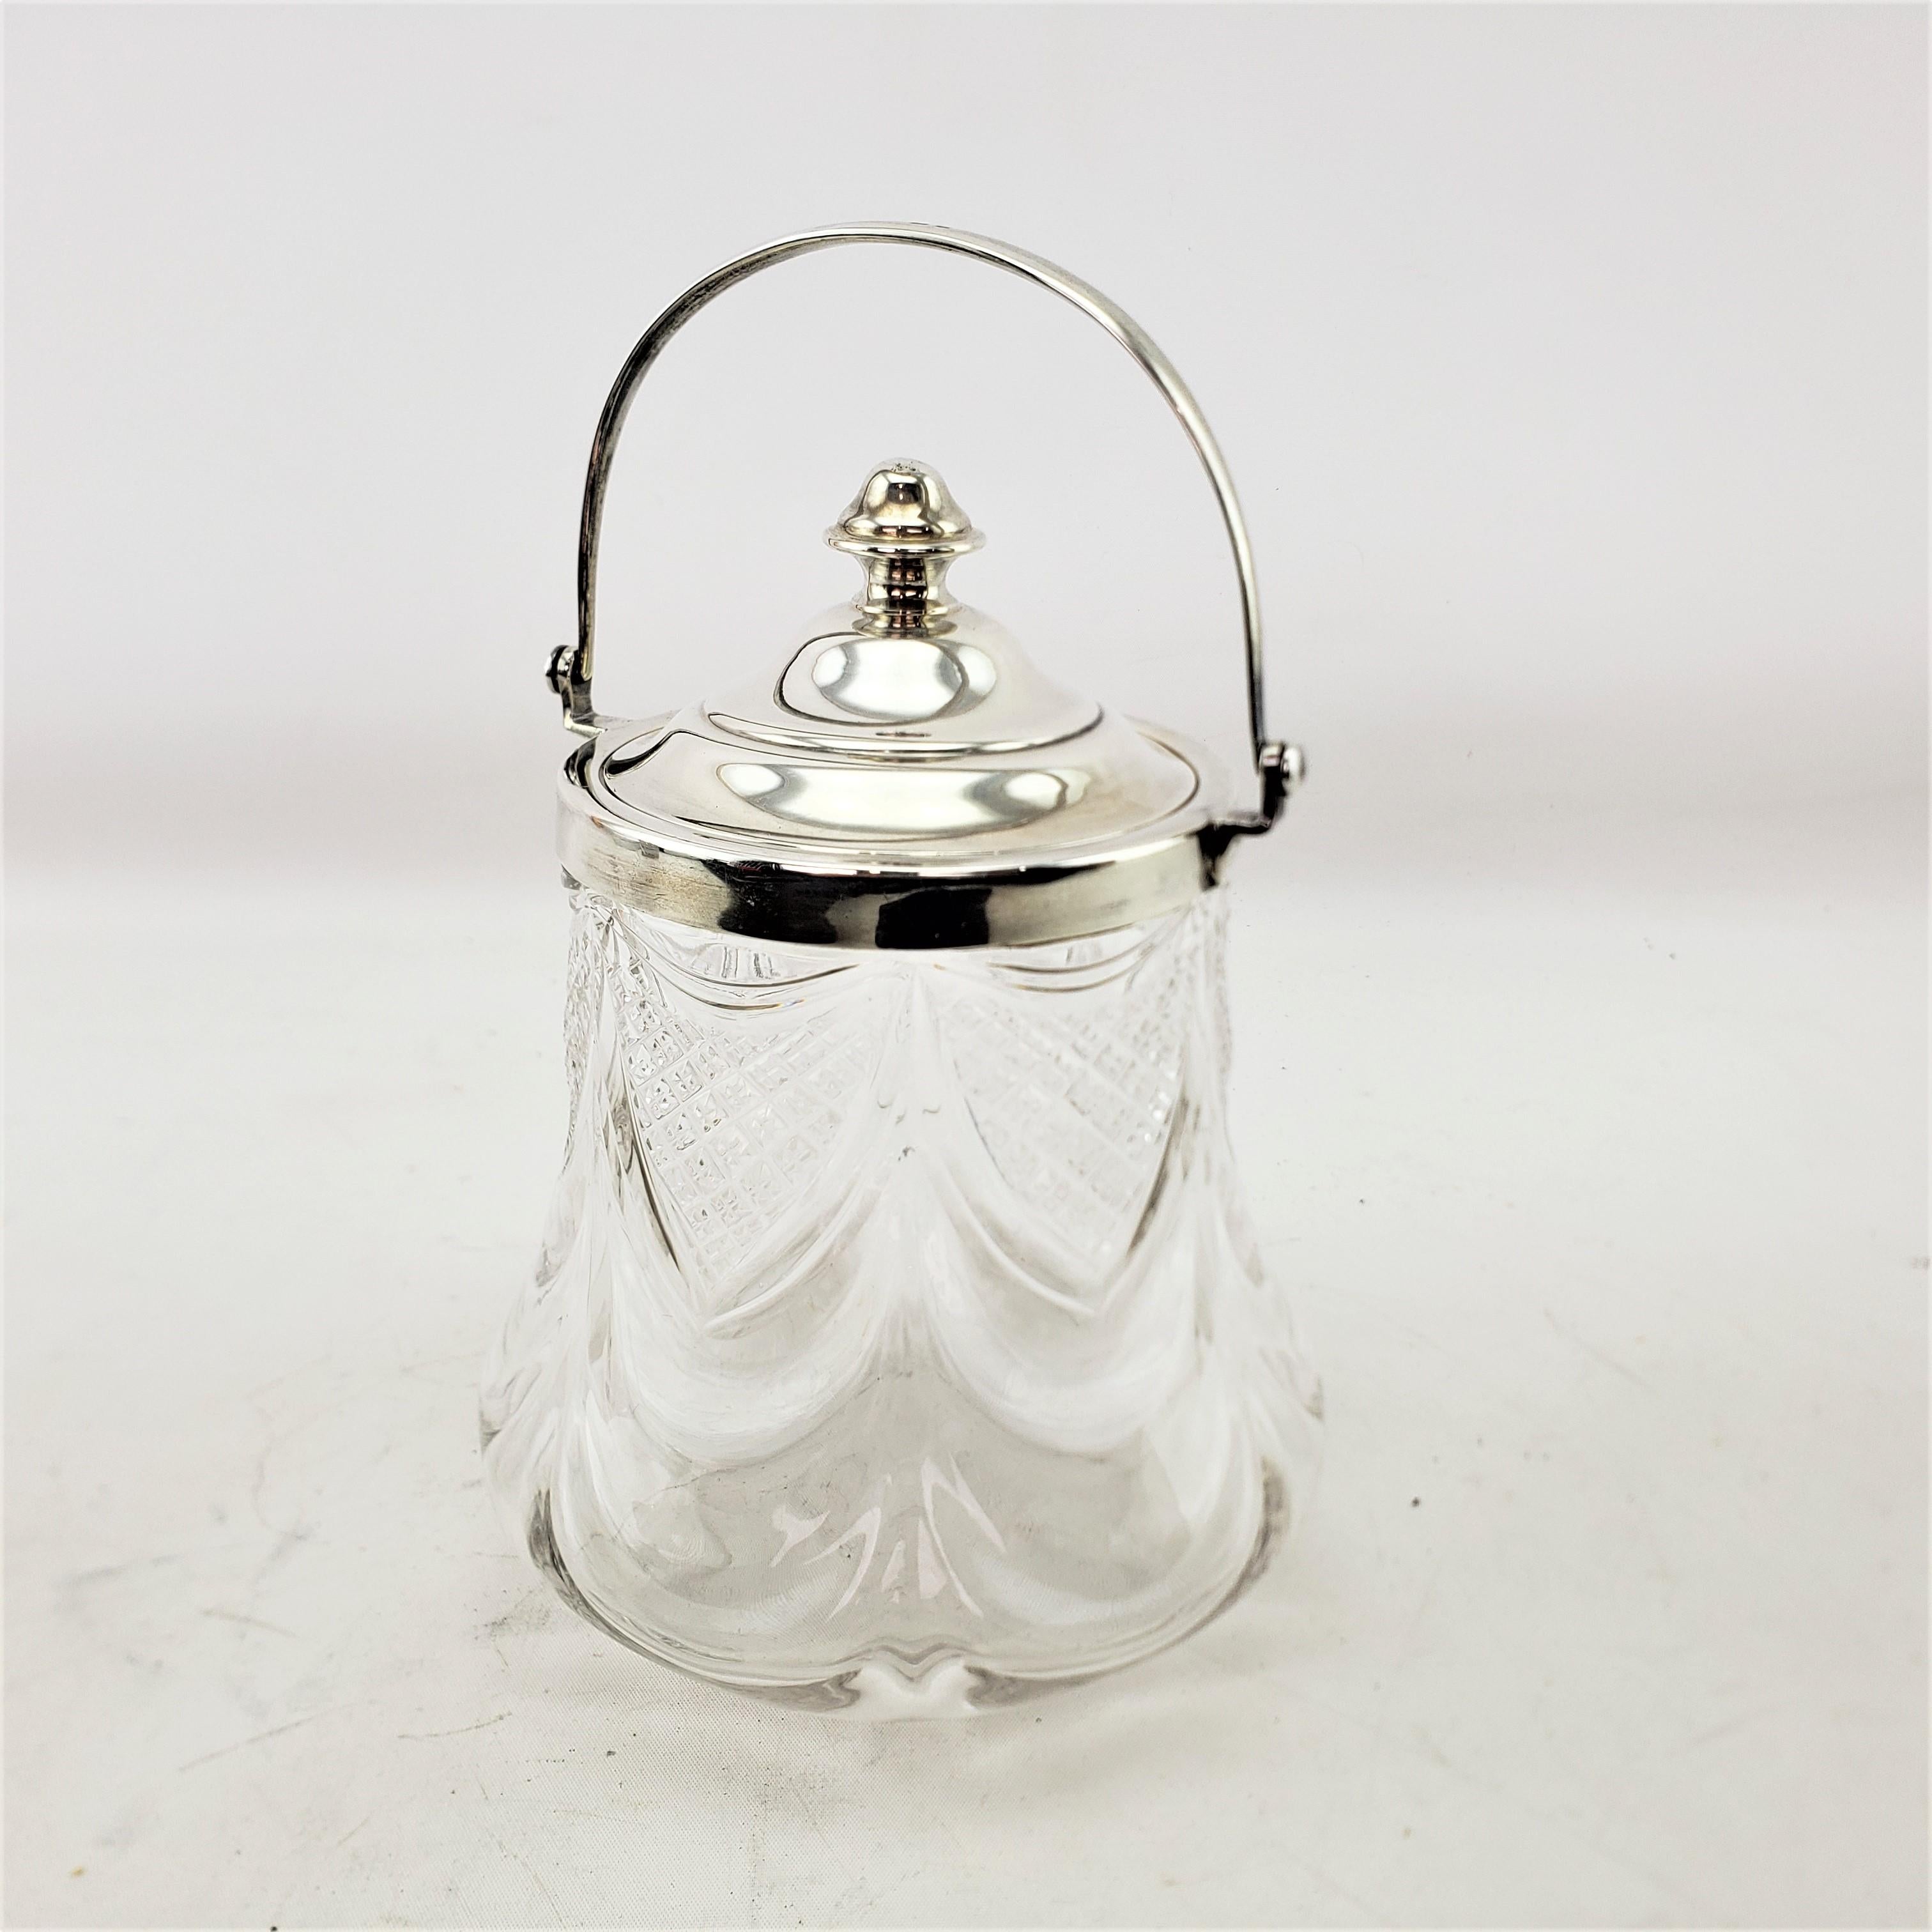 Dieses antike Keksfass oder abgedeckte Gefäß wurde von dem bekannten englischen Silberschmied James Deakin & Sons um 1920 im Stil des Art déco hergestellt. Dieses Biskuitfass besteht aus klarem Kristall mit drapierten, diamantgeschliffenen Akzenten